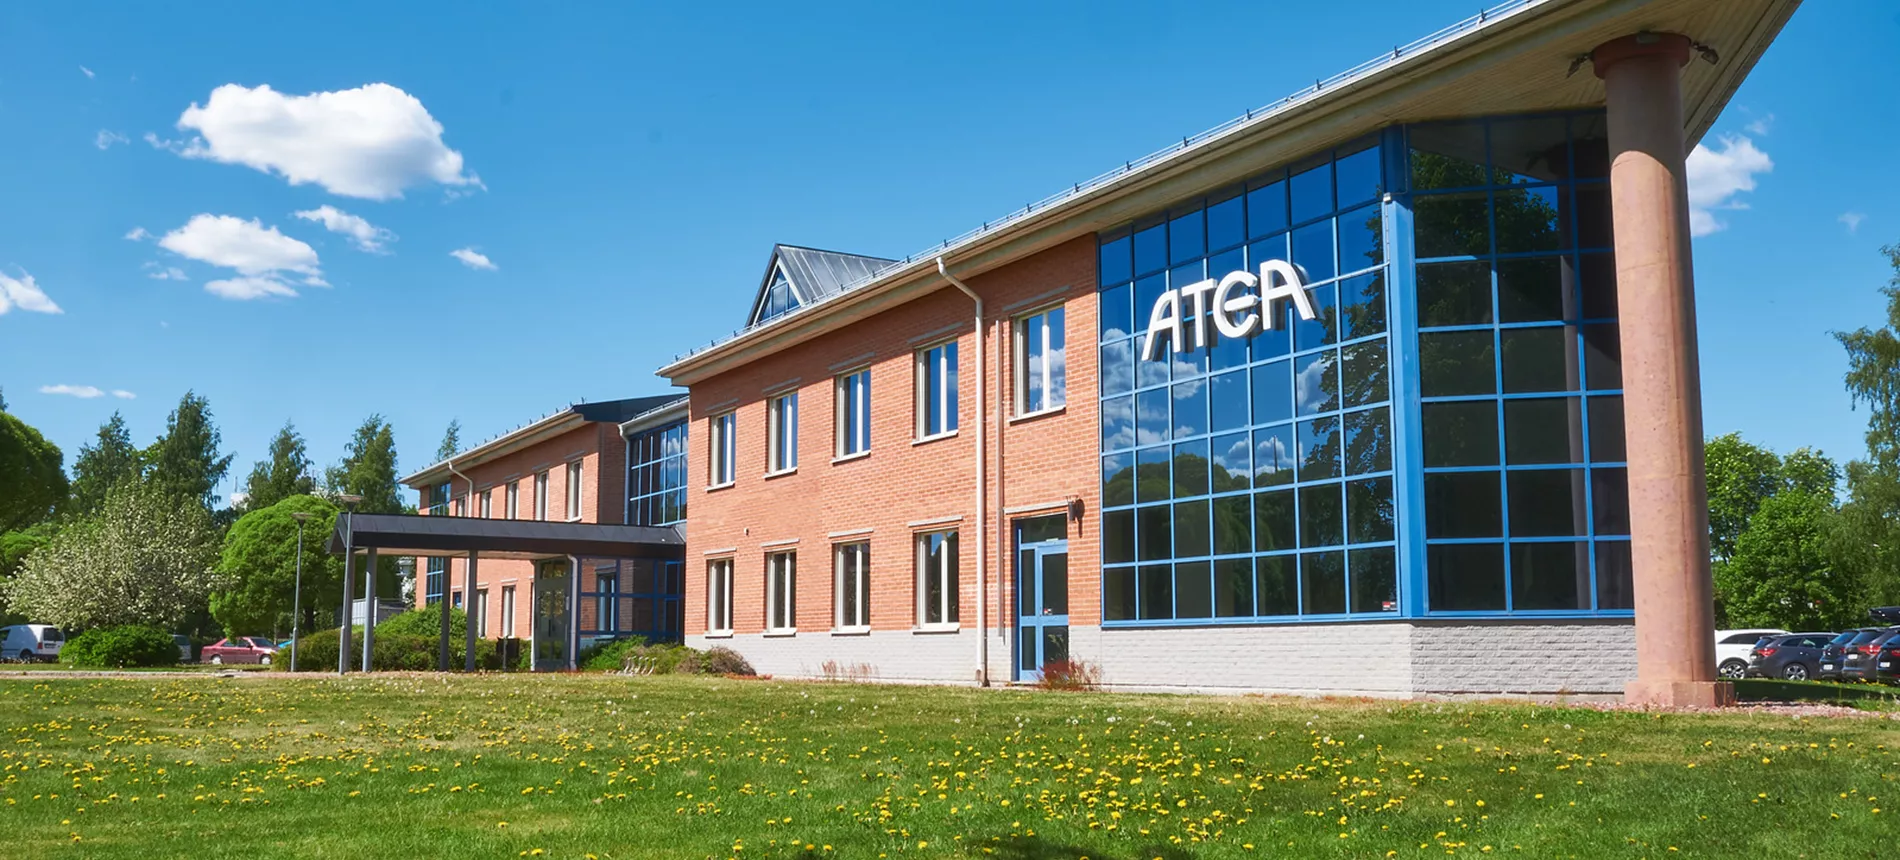 Utsidan av Ateas kontor i Borlänge